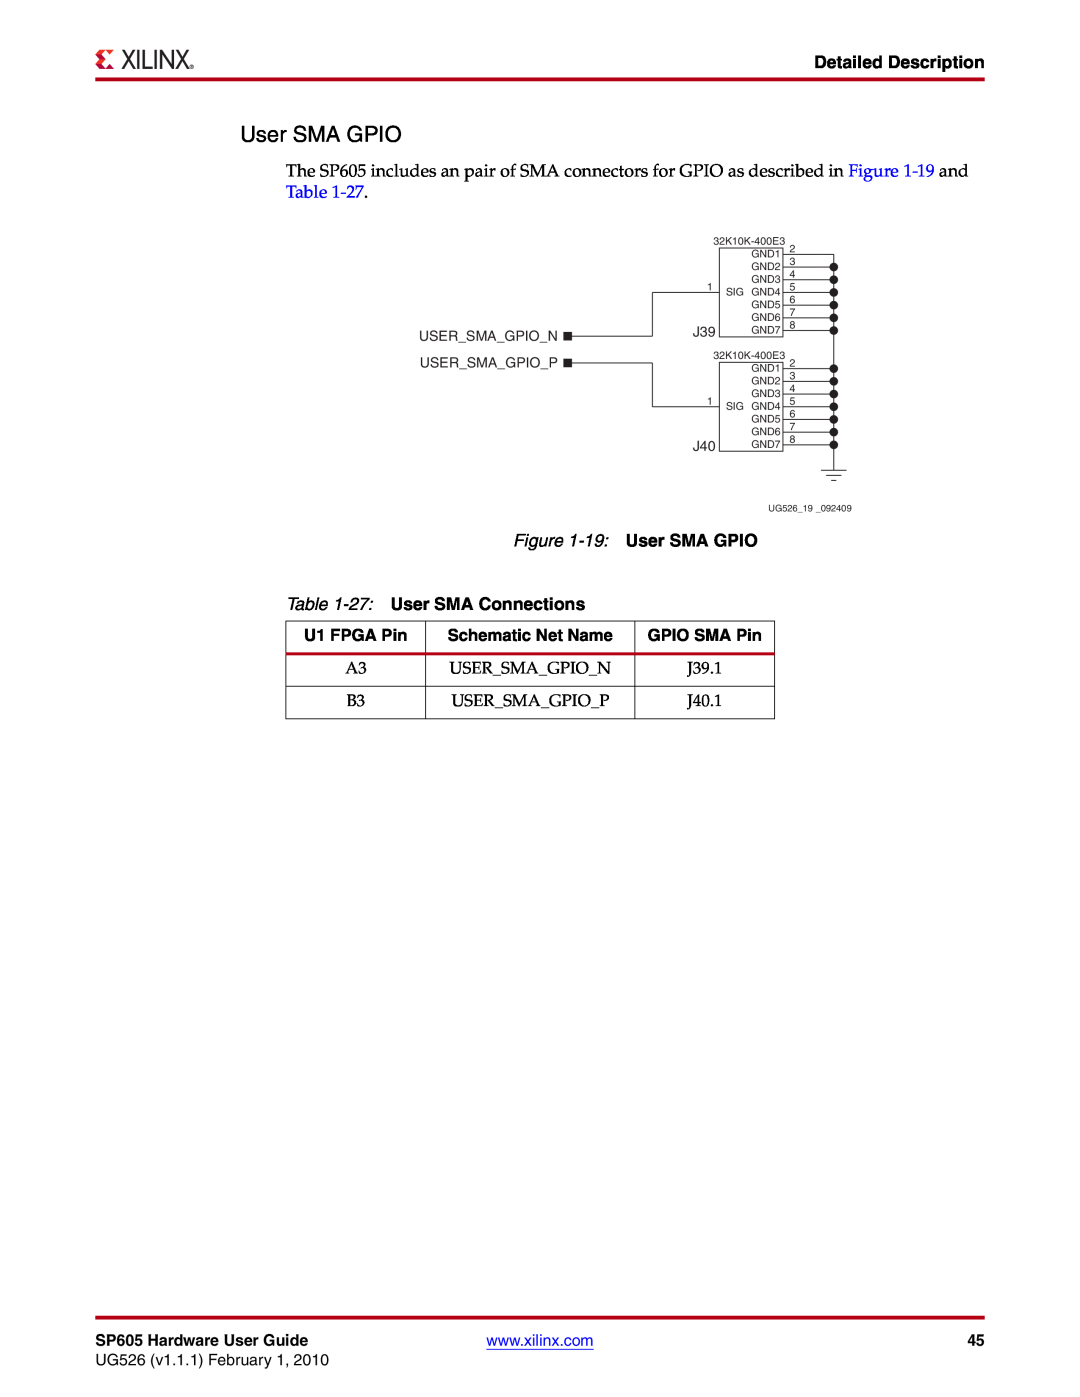 Xilinx SP605 manual 19 User SMA GPIO, 27 User SMA Connections, GPIO SMA Pin, Detailed Description, U1 FPGA Pin 